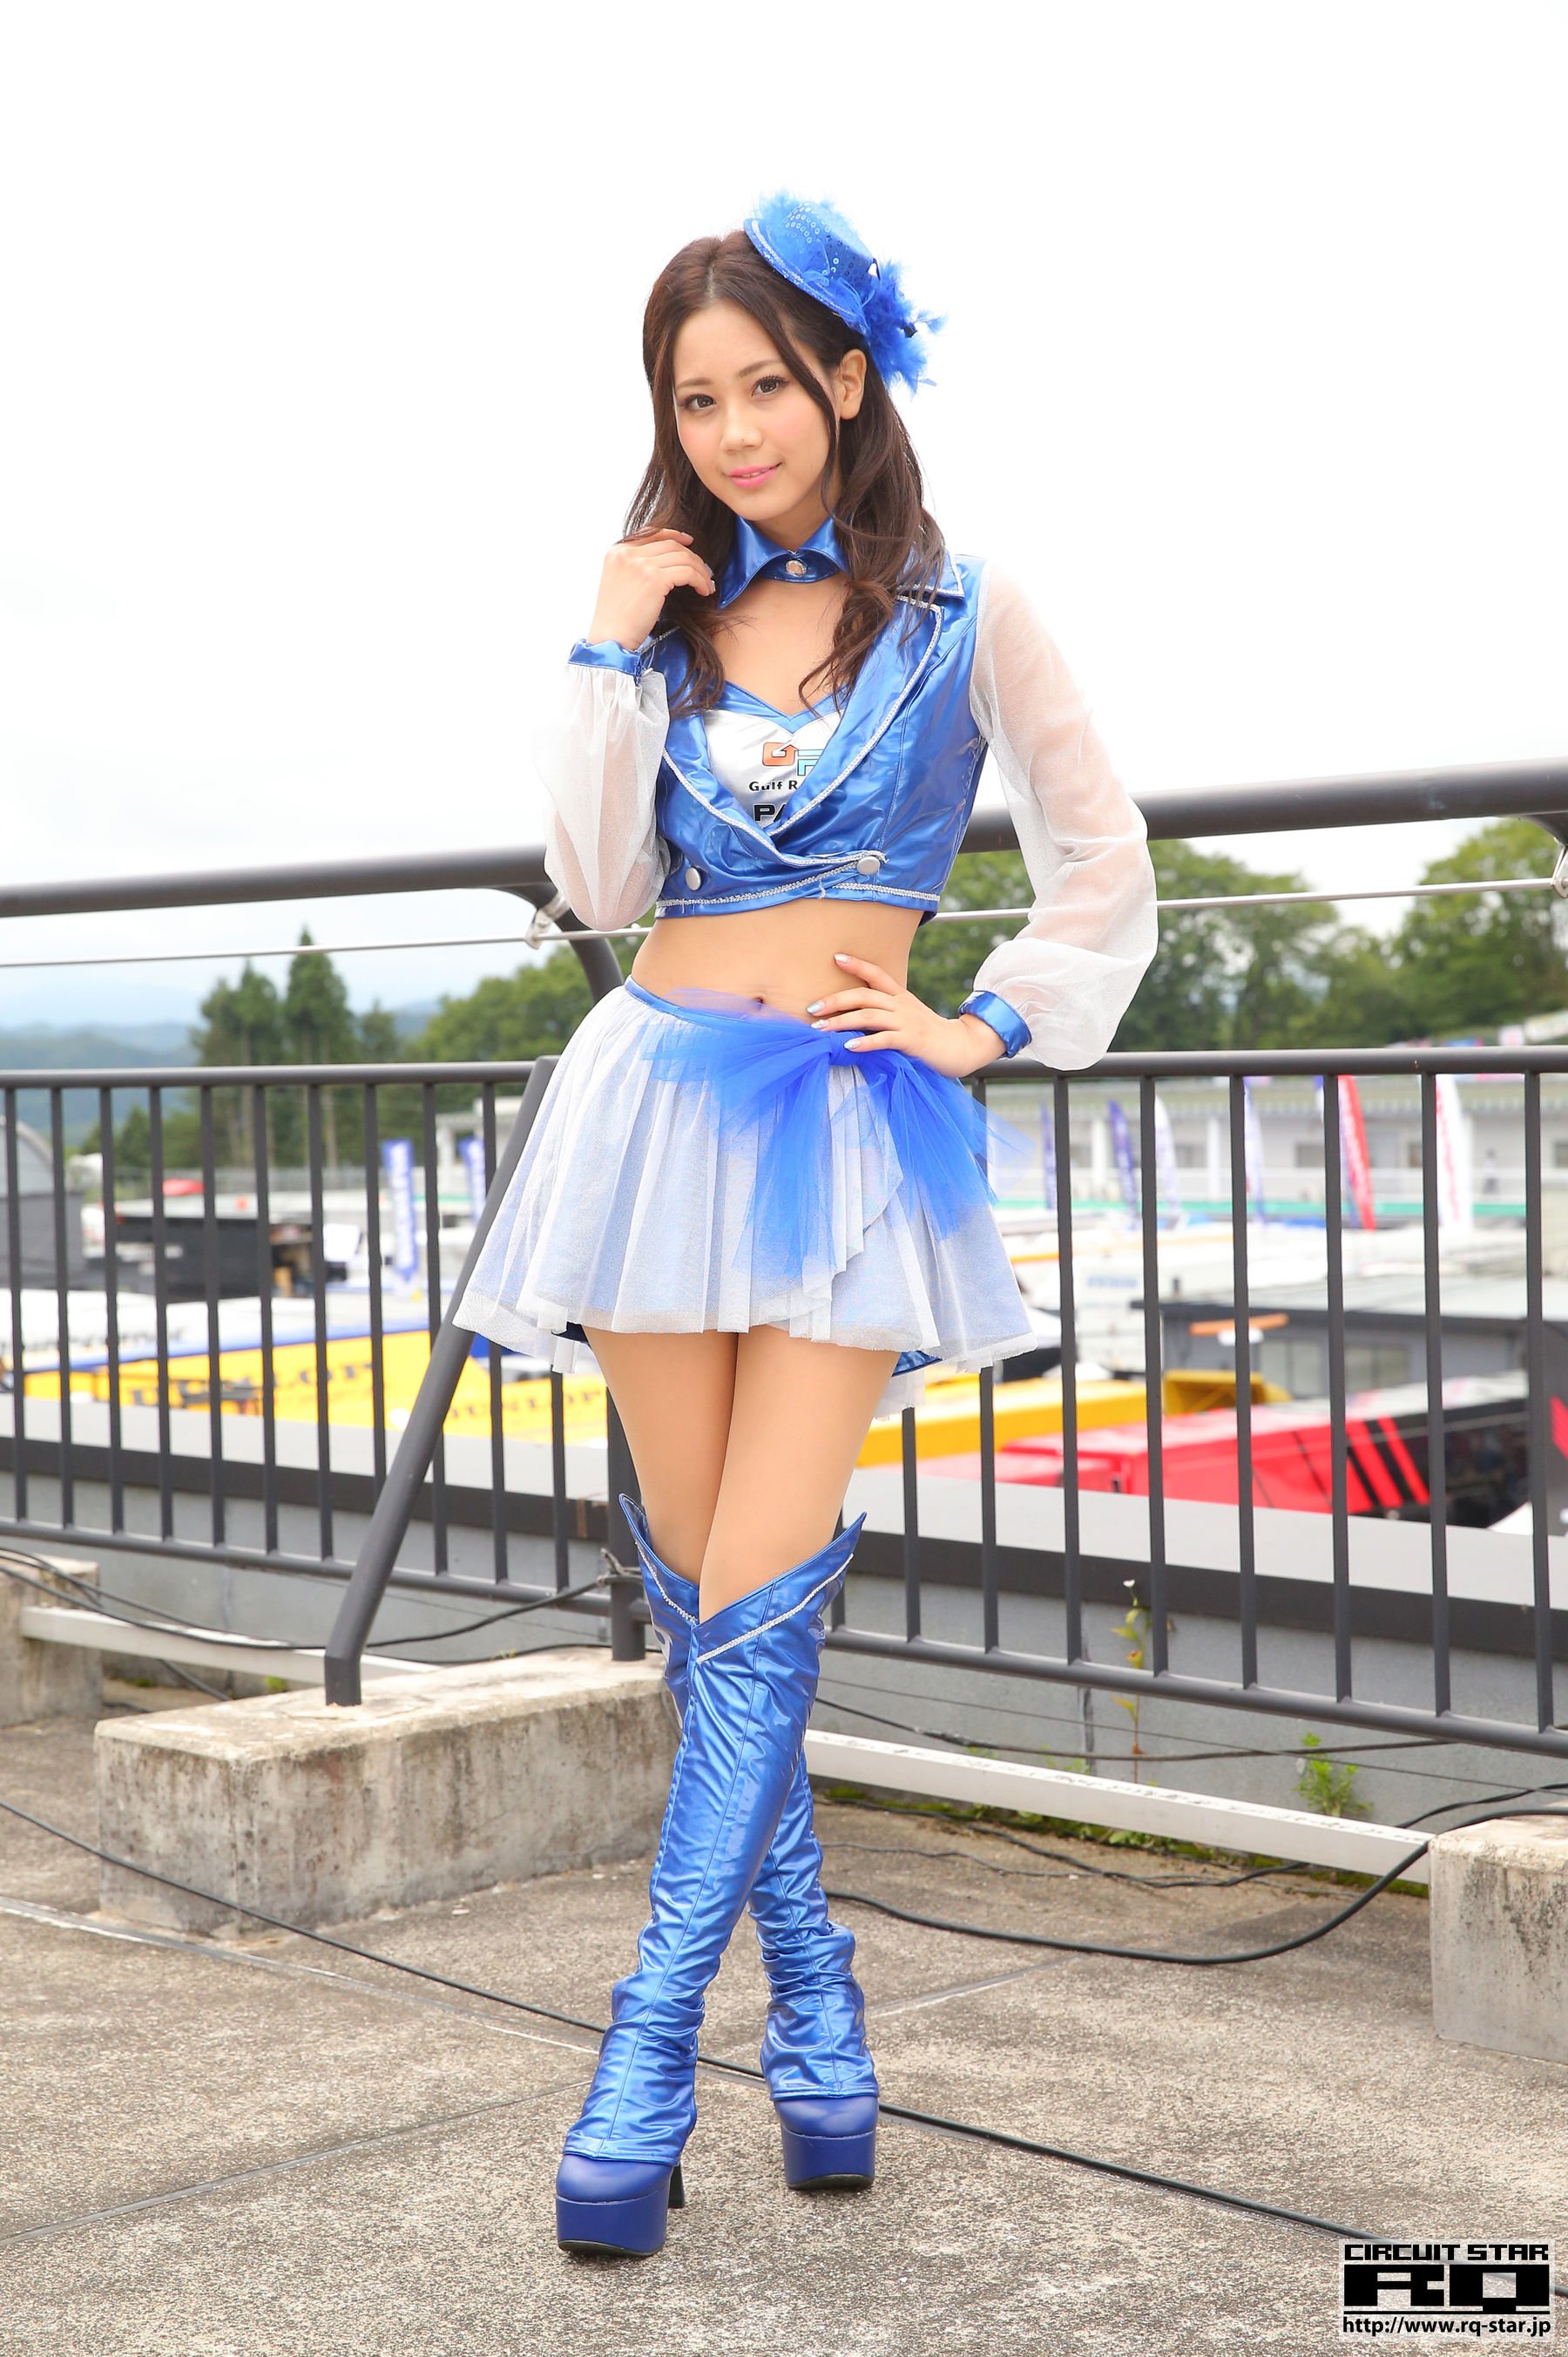 [RQ-STAR]赛车女郎:大島理沙高品质私家拍摄作品在线浏览(25P)